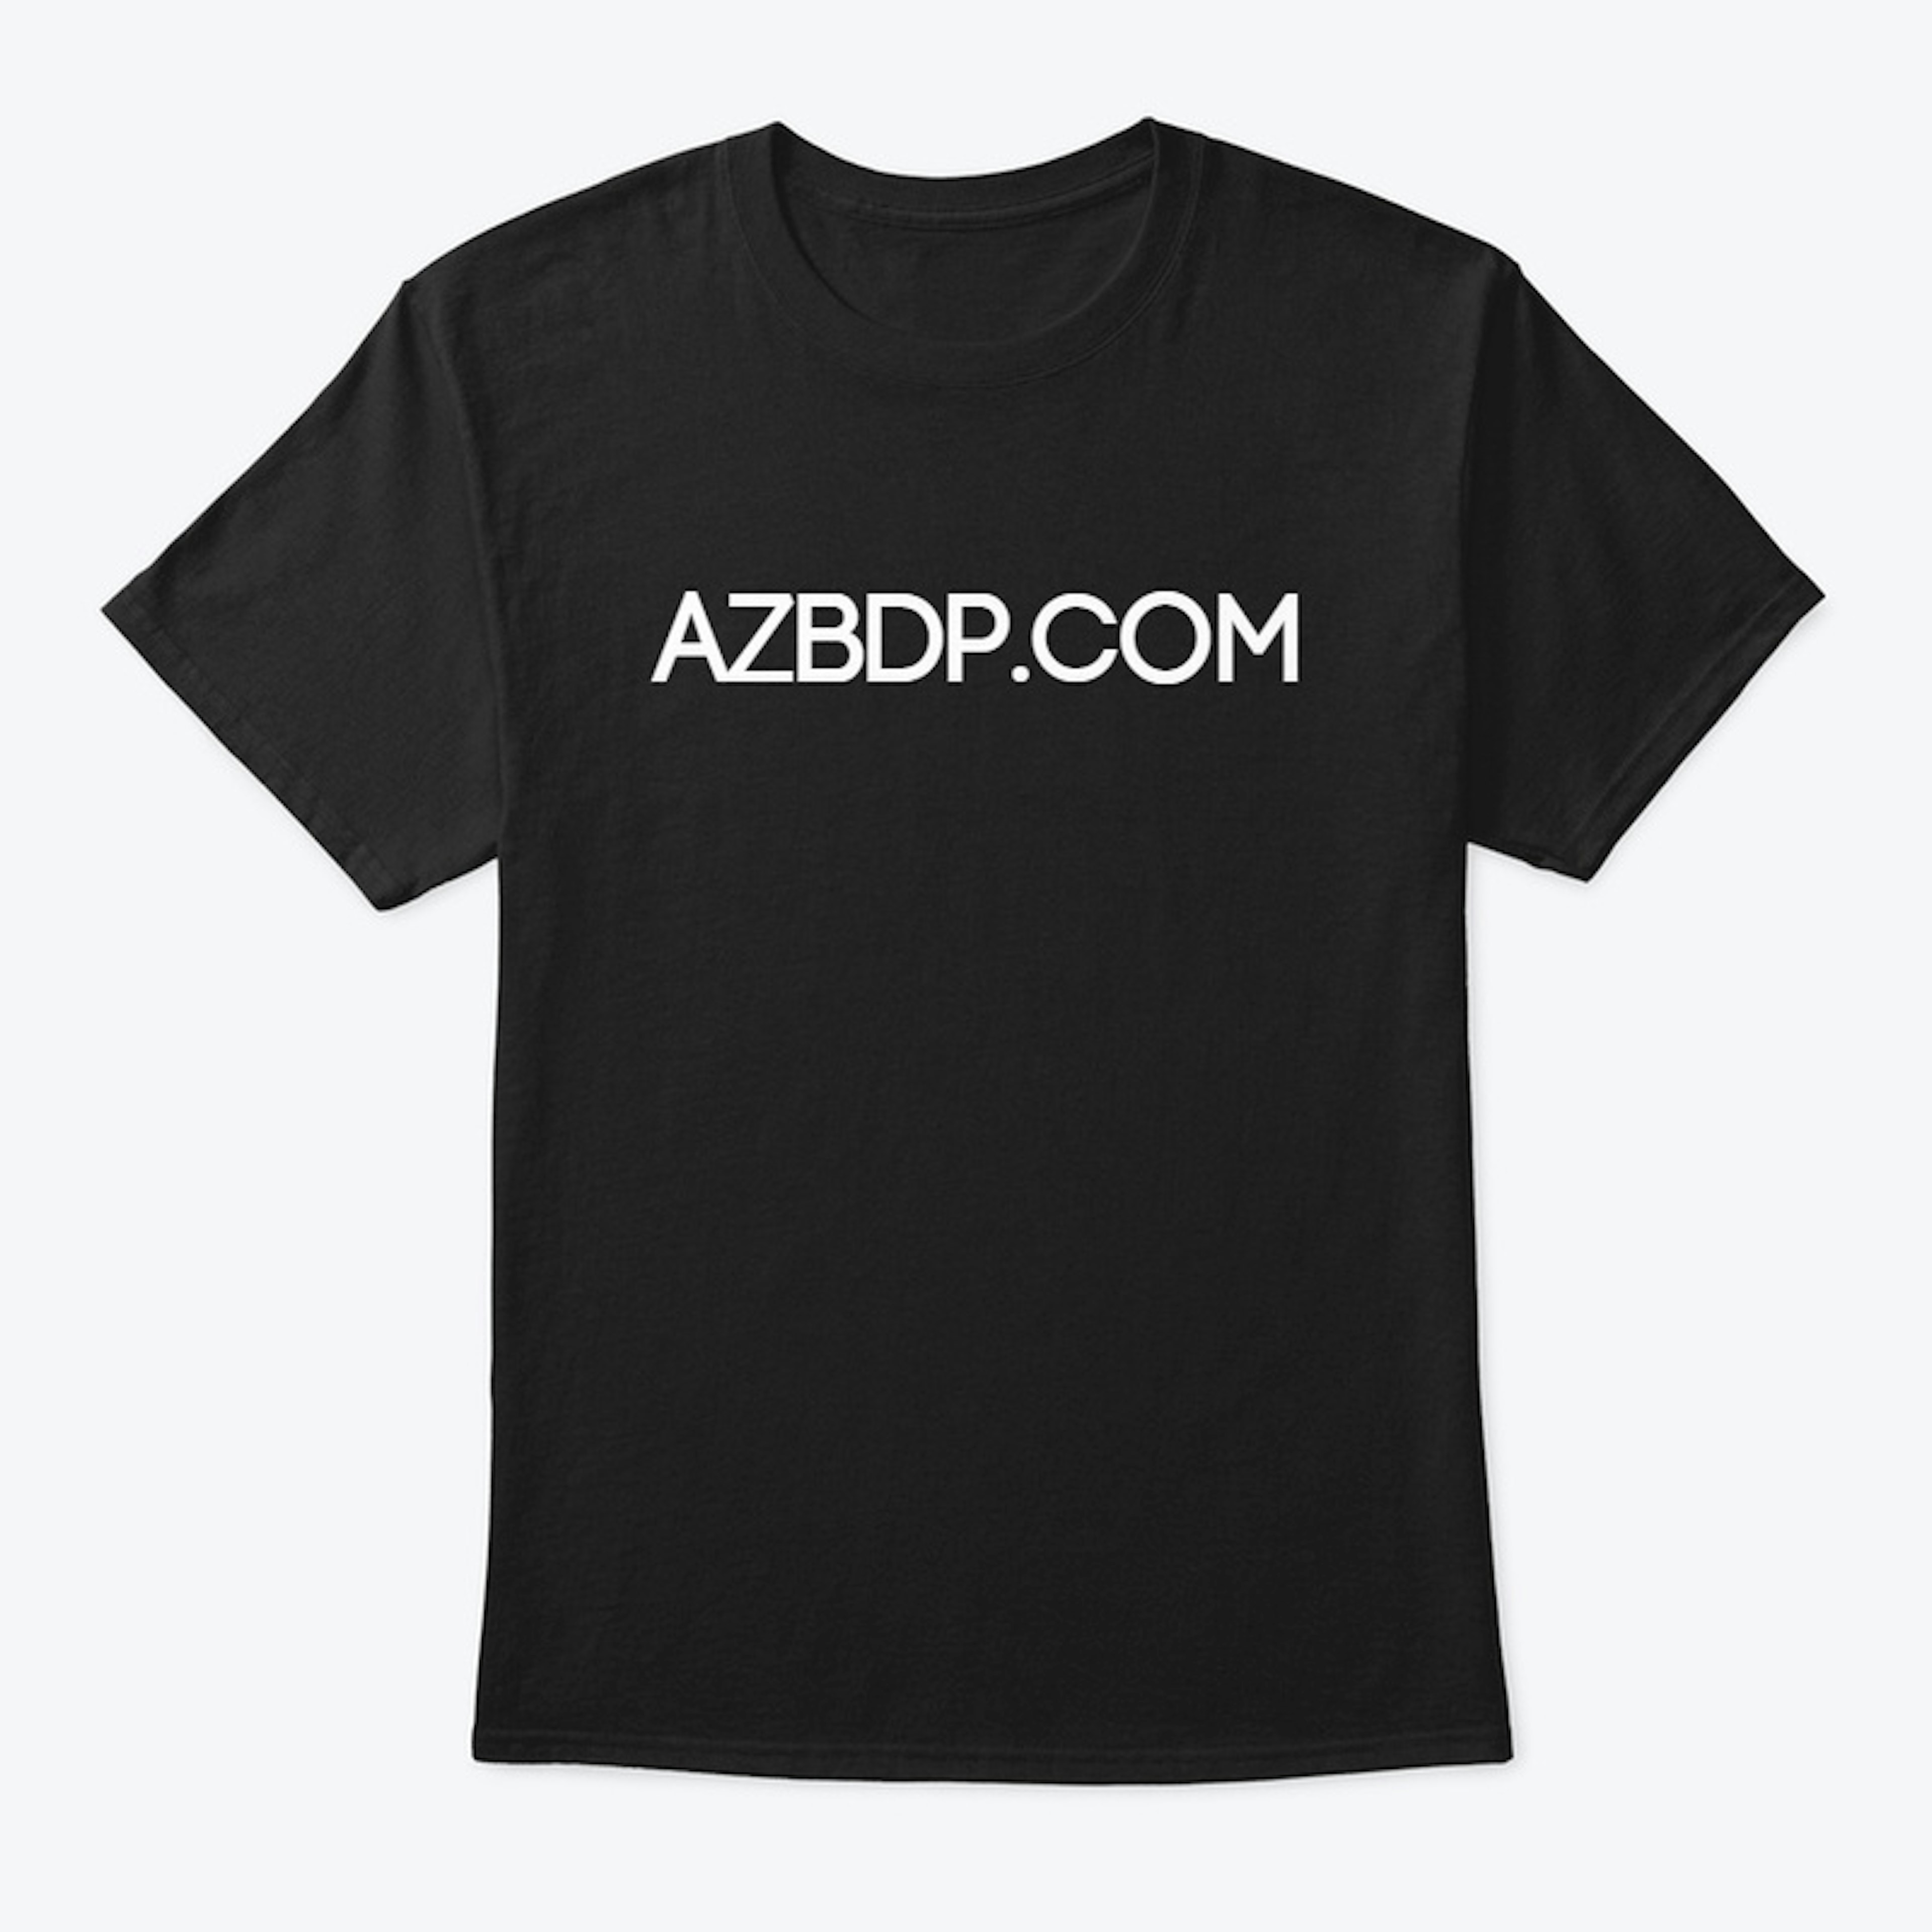 AZBDP.COM